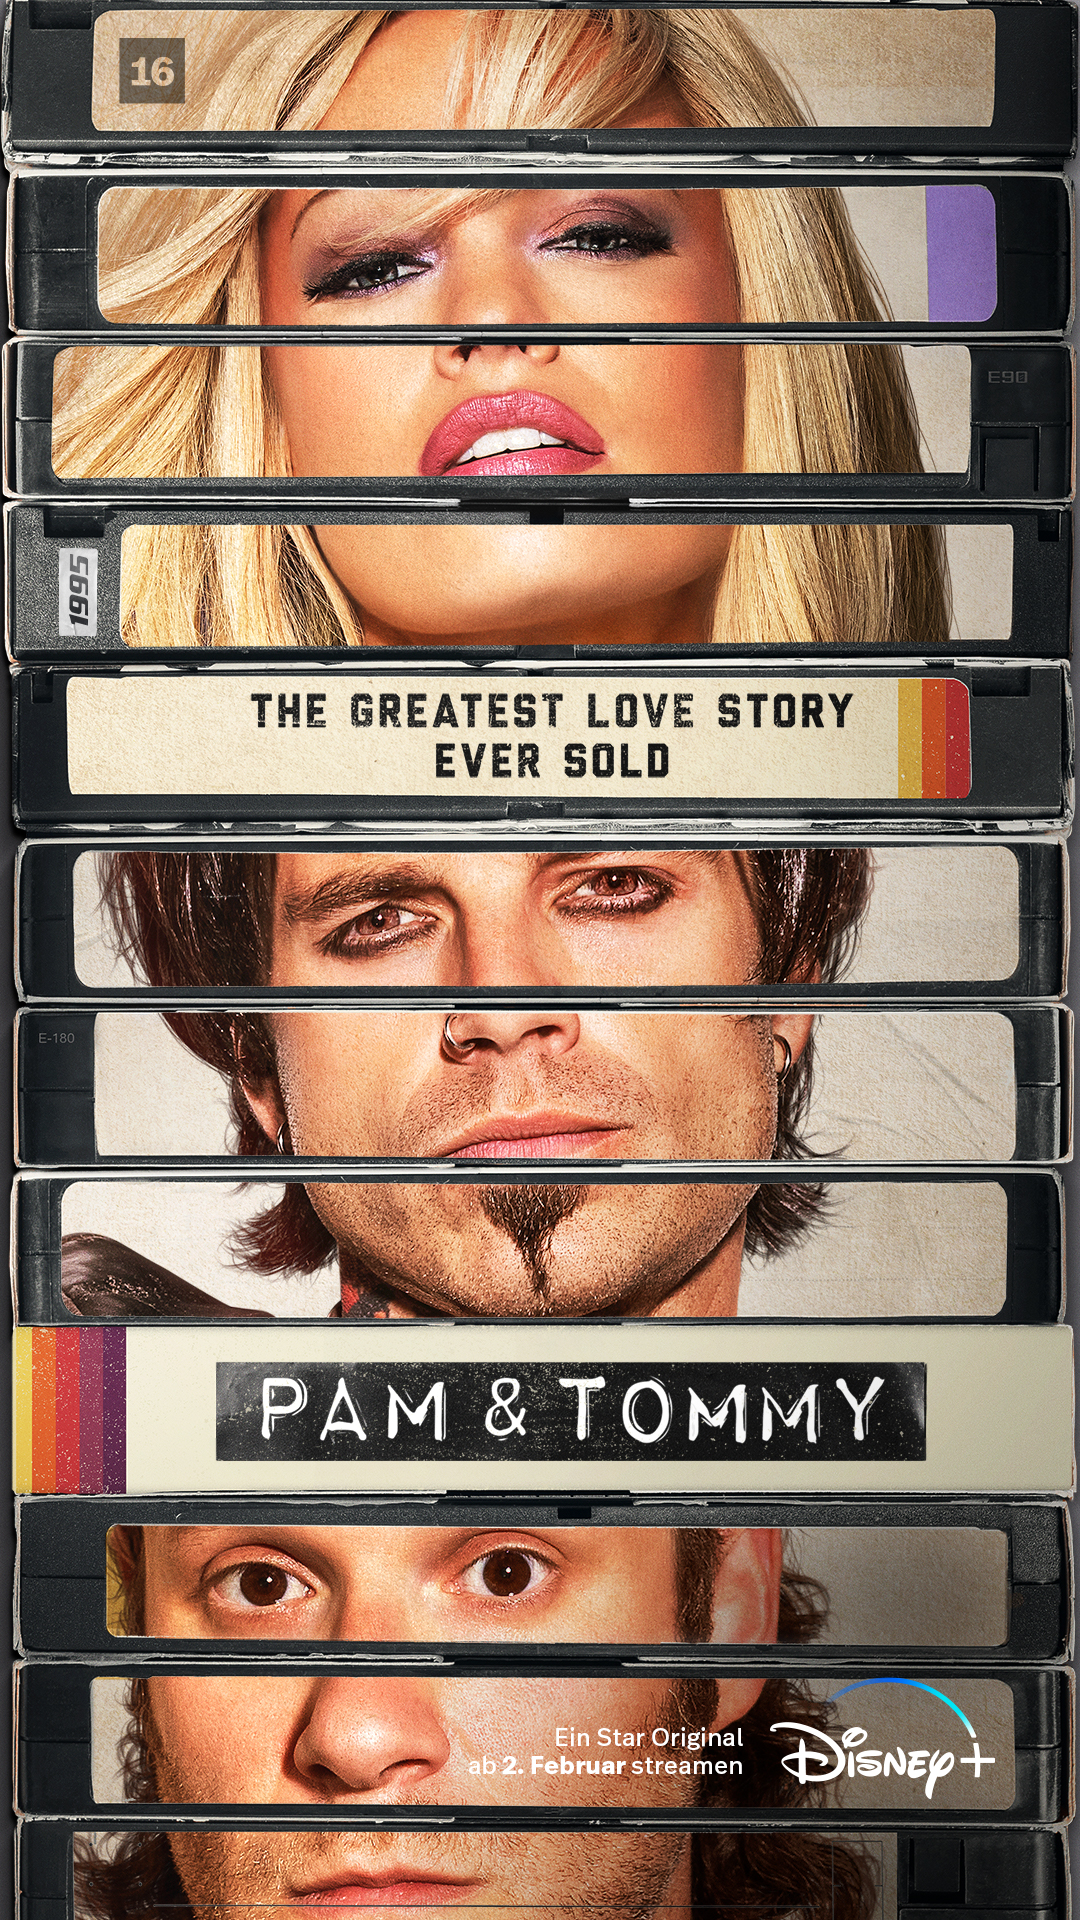 Trailer und Character Poster der Original Serie "PAM & TOMMY"